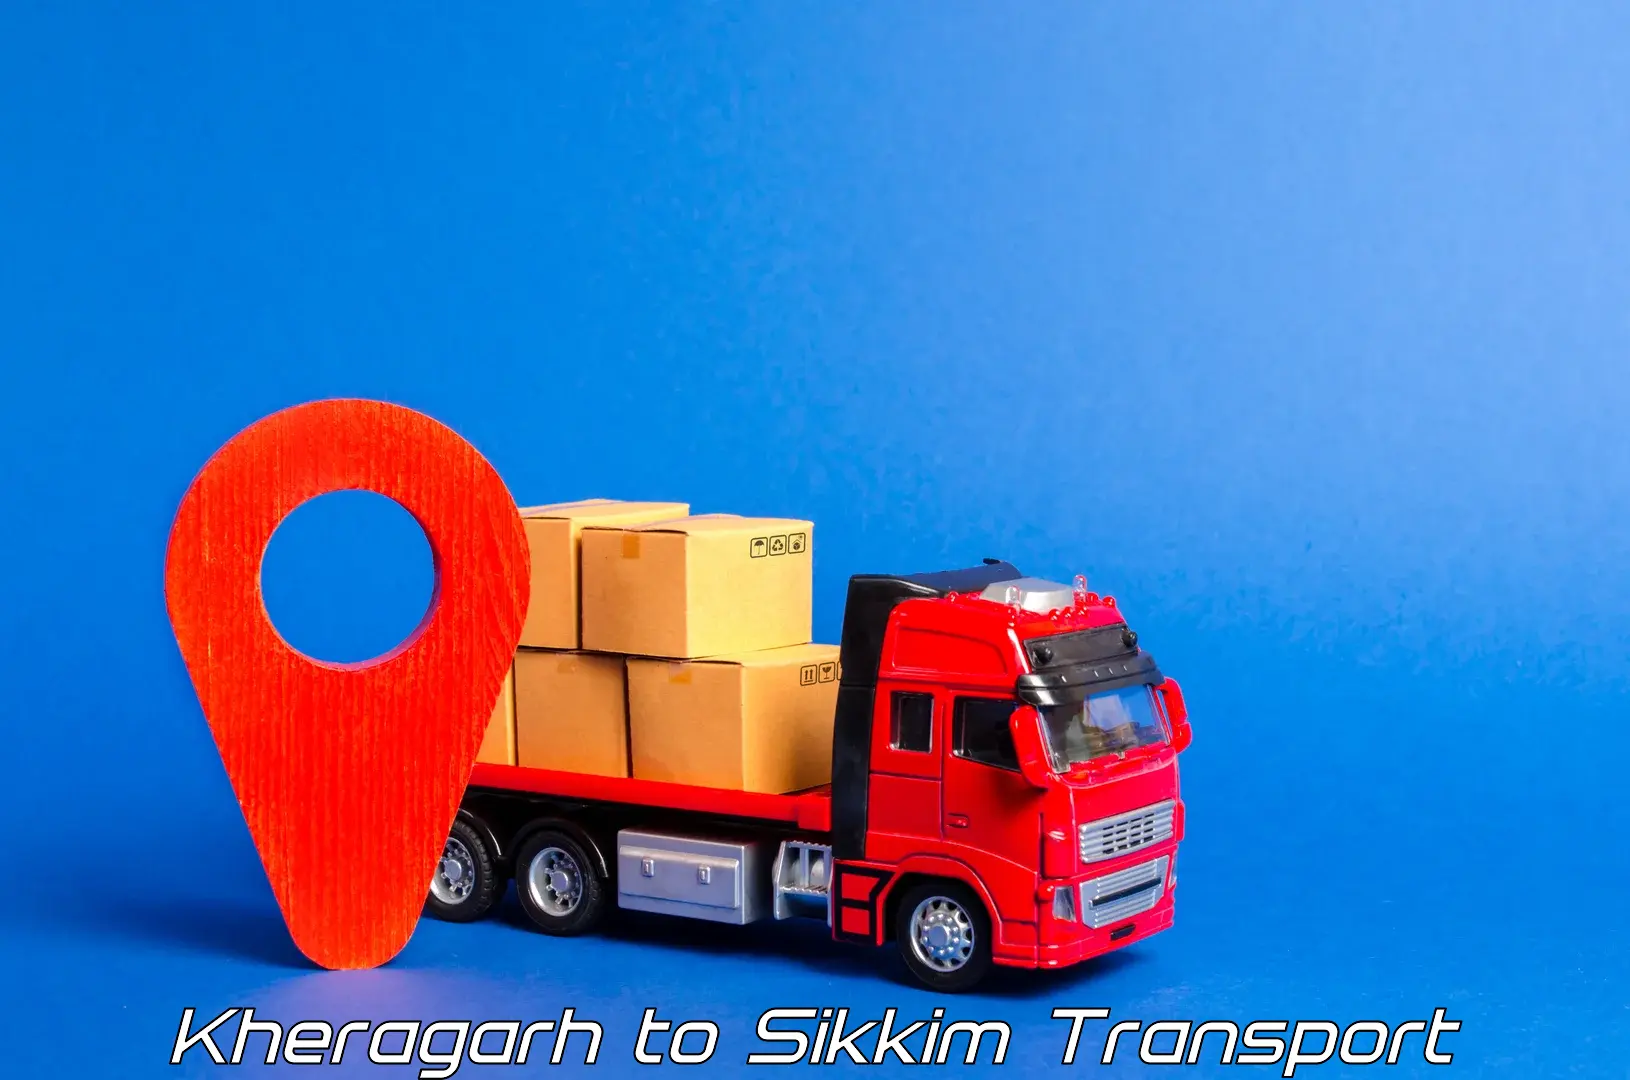 Online transport service Kheragarh to Mangan